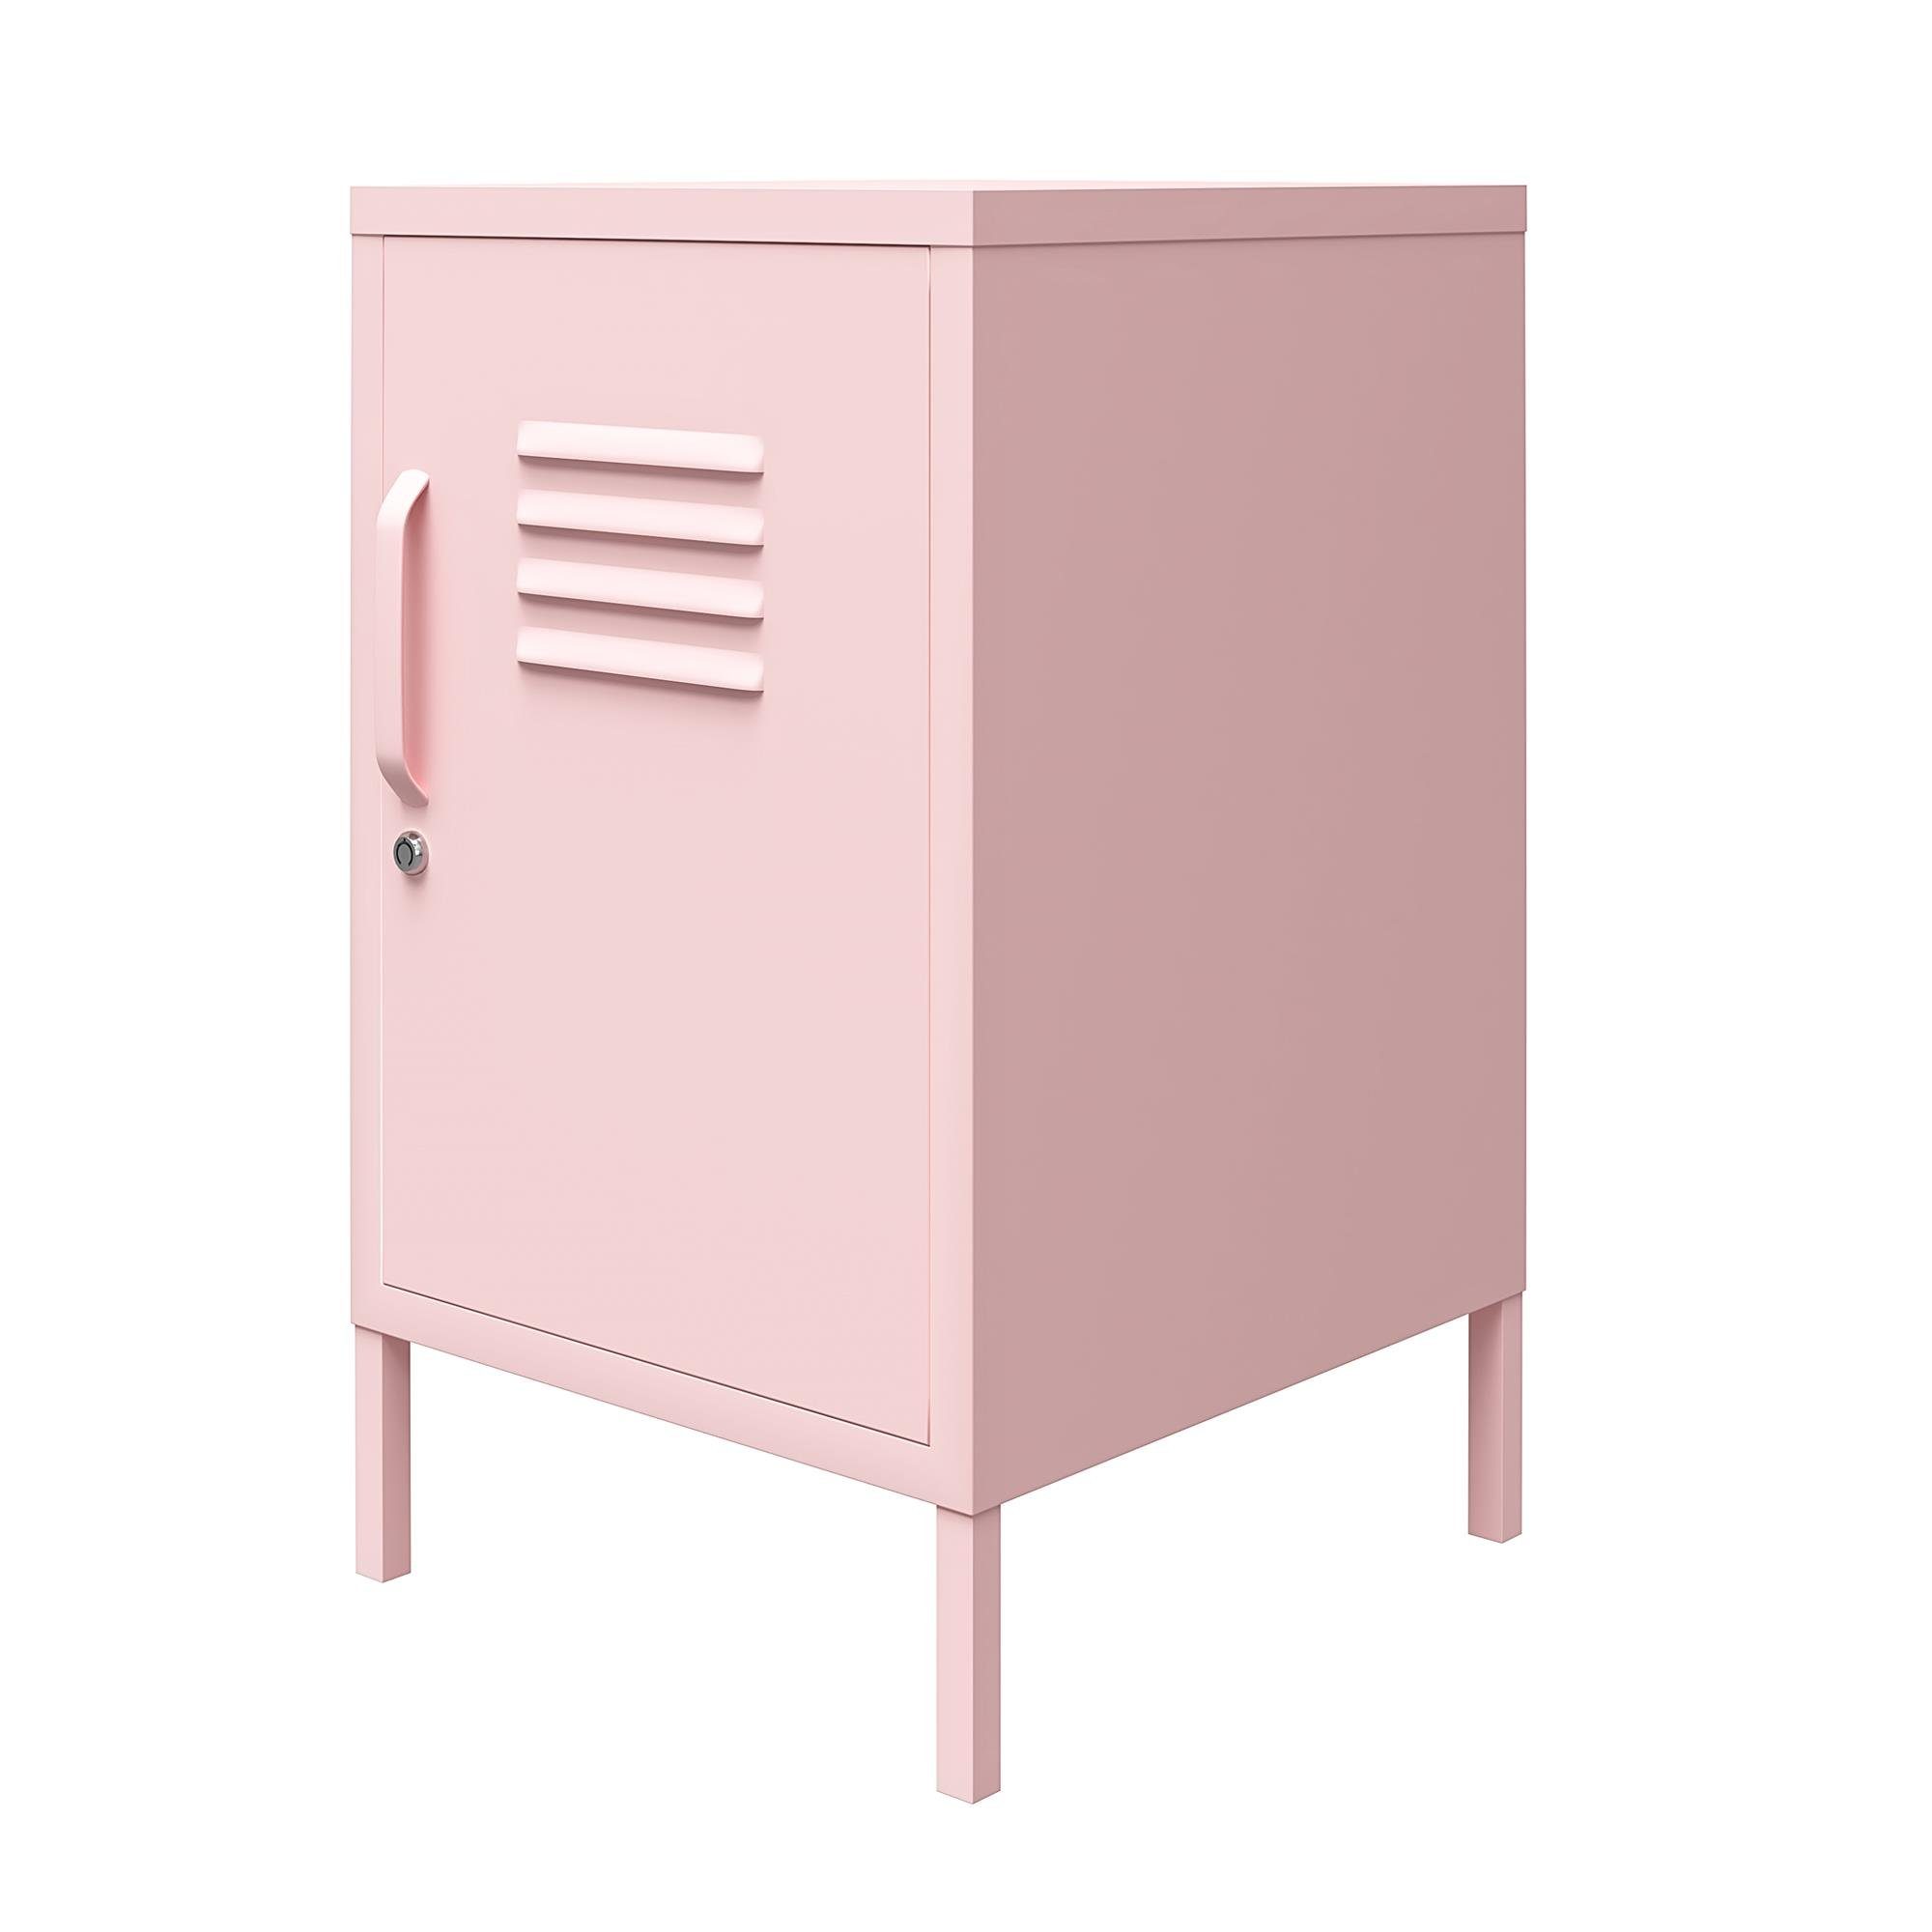 aus Retro-Design Metall im pink Nachtschrank loft24 abschließbar, Spint-Look, Cache